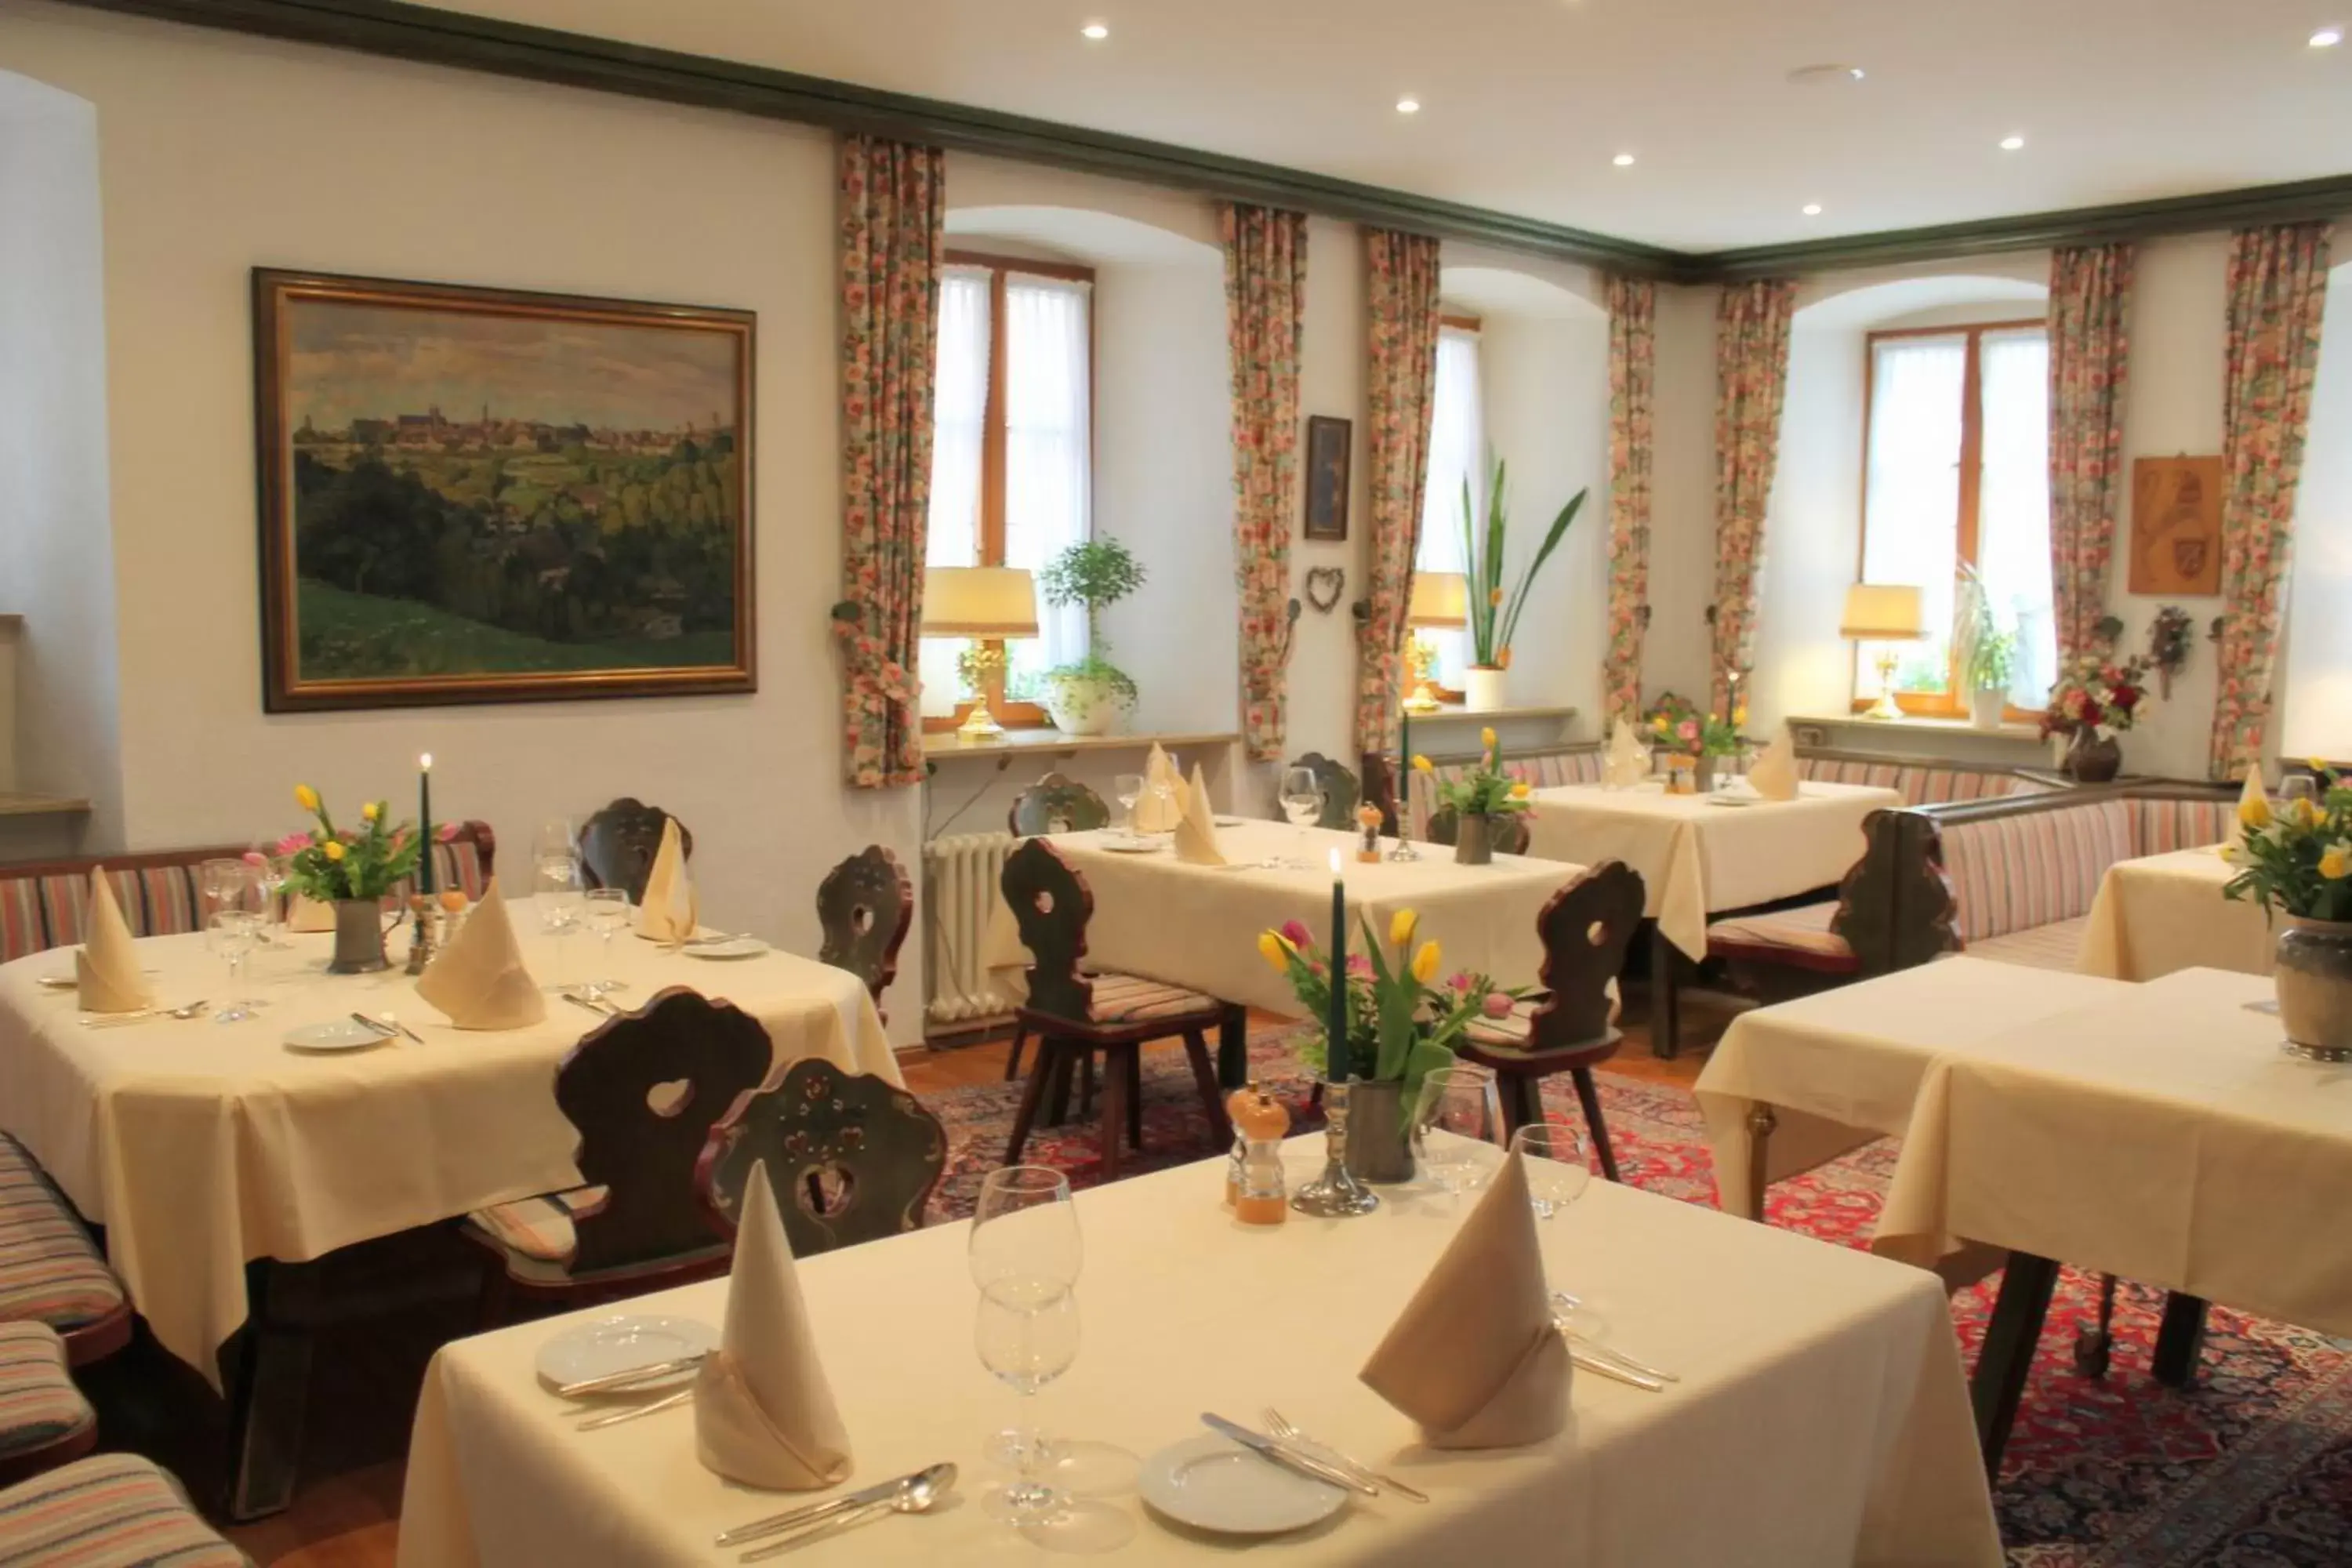 Restaurant/Places to Eat in Tilman Riemenschneider